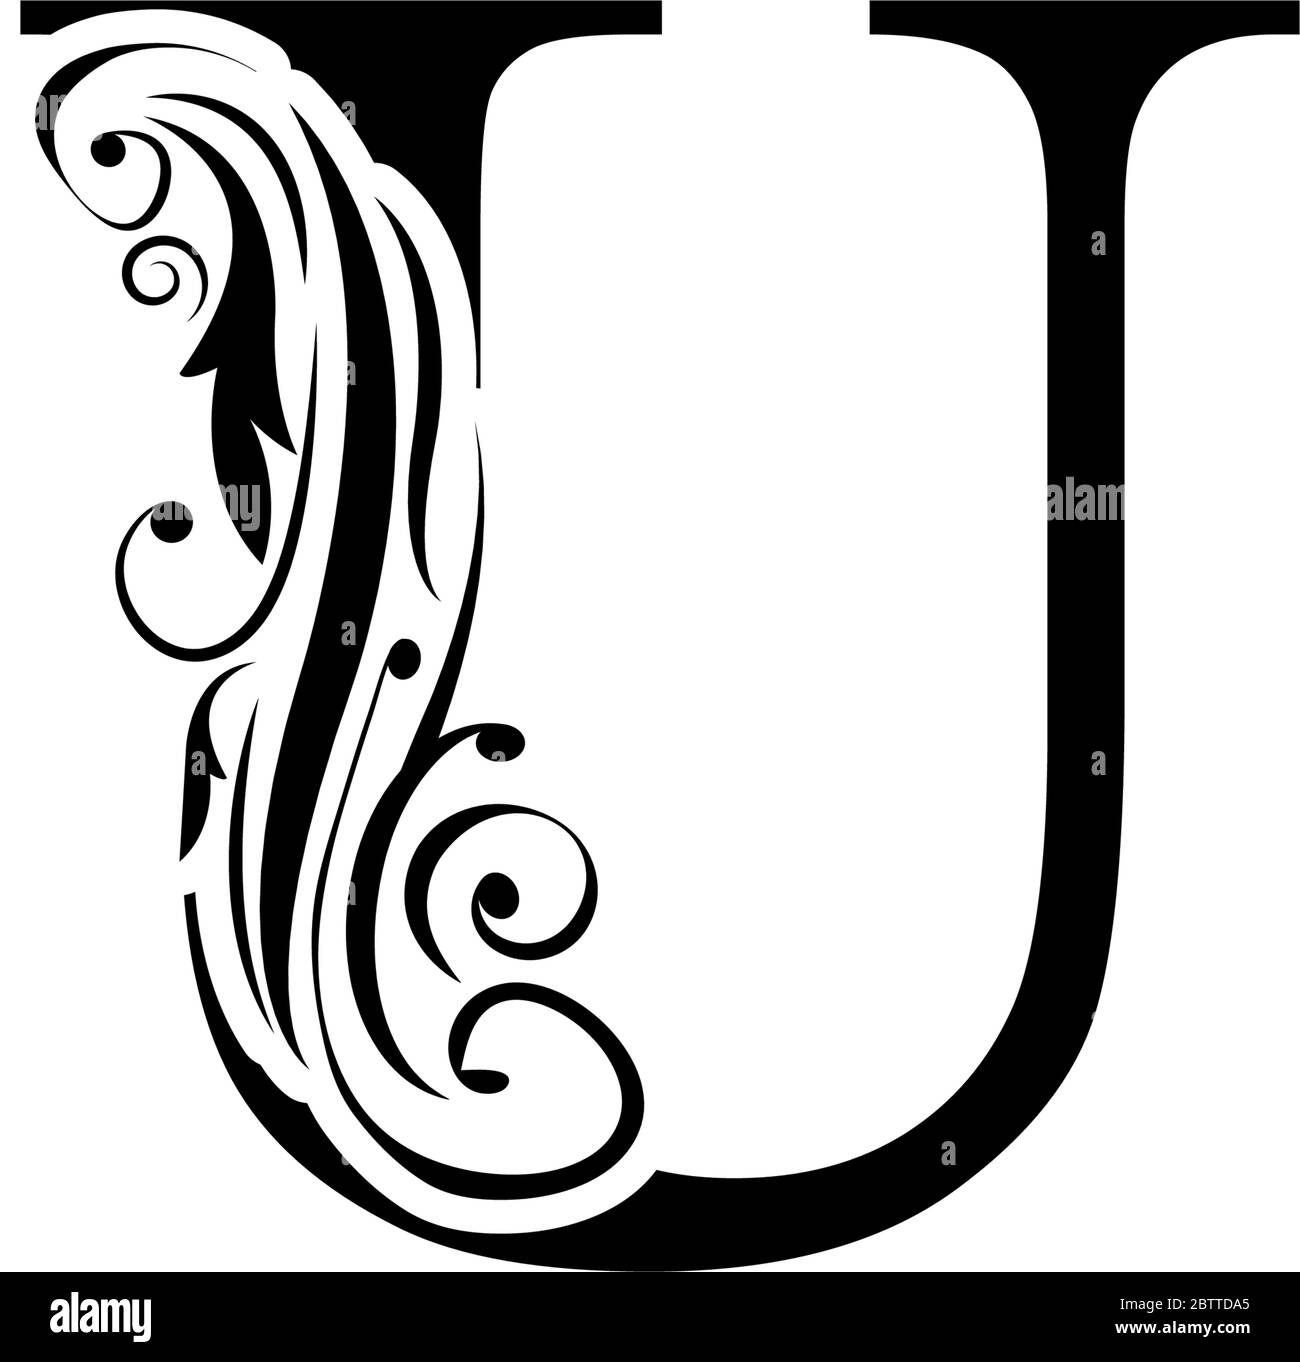 Chữ U đen trắng - đơn giản, thuần tình, trang trọng. Hãy xem hình ảnh liên quan để cảm nhận sự ấn tượng mạnh mẽ của kiểu chữ này.